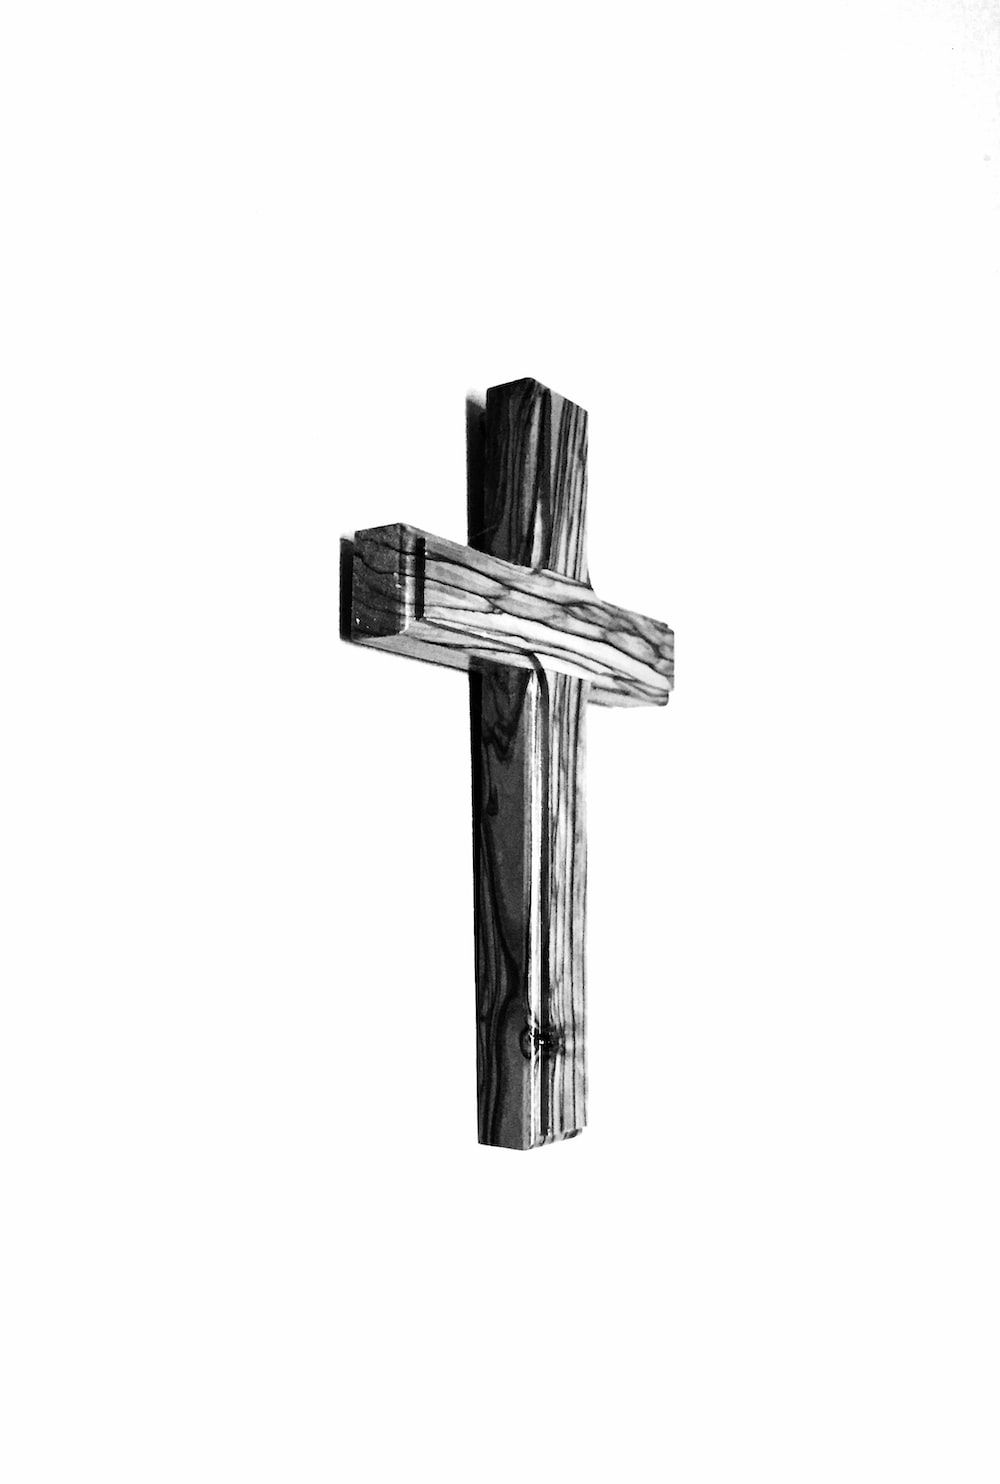 A wooden cross - Cross